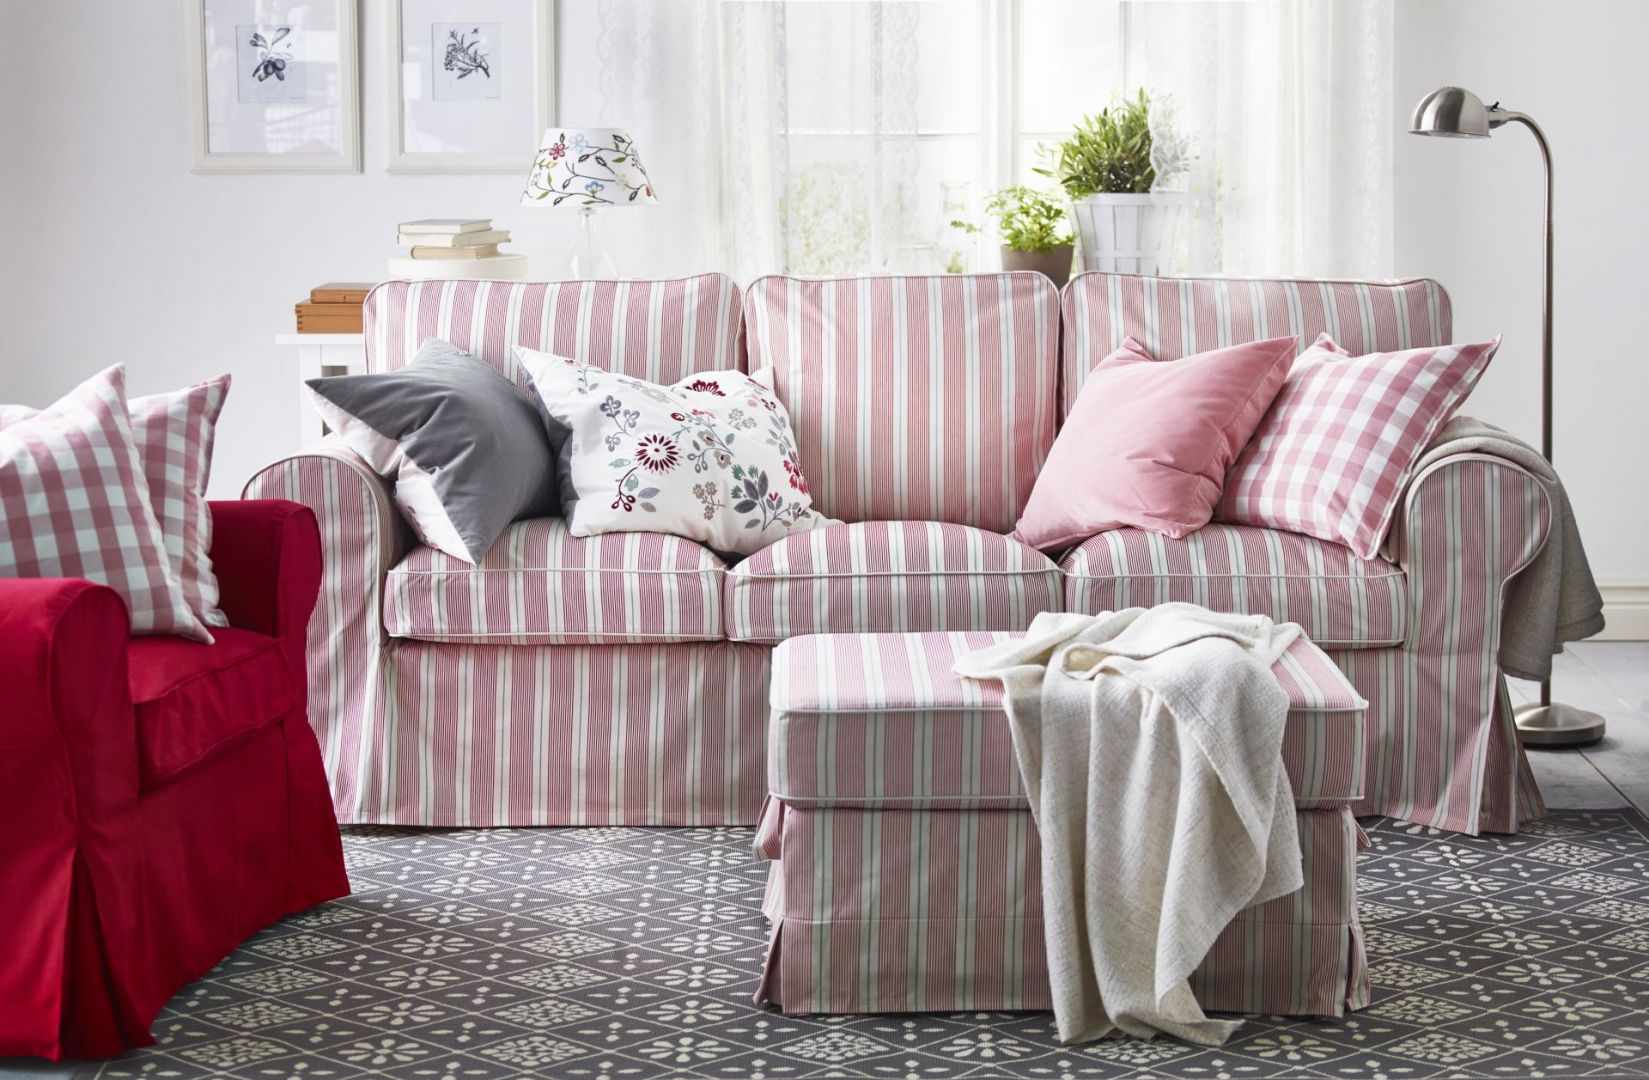 Sofa Ektorp zapewni pełen komfort i wypoczynek. Miękkie siedzisko raz głębokie oparcia to wyróżniki tej propozycji. Fot. IKEA